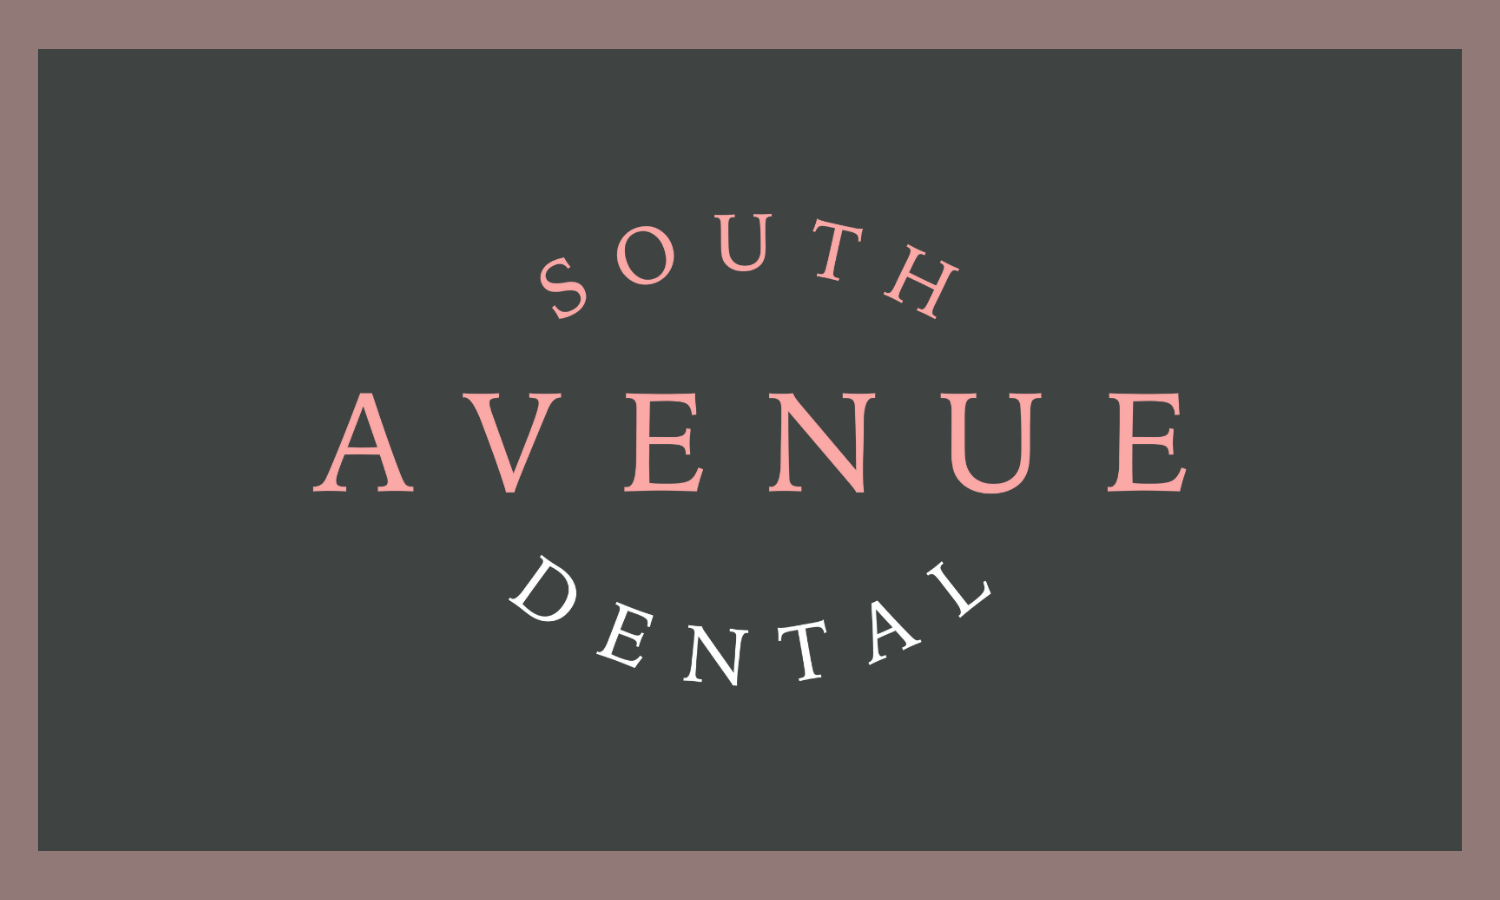 South Ave Dental